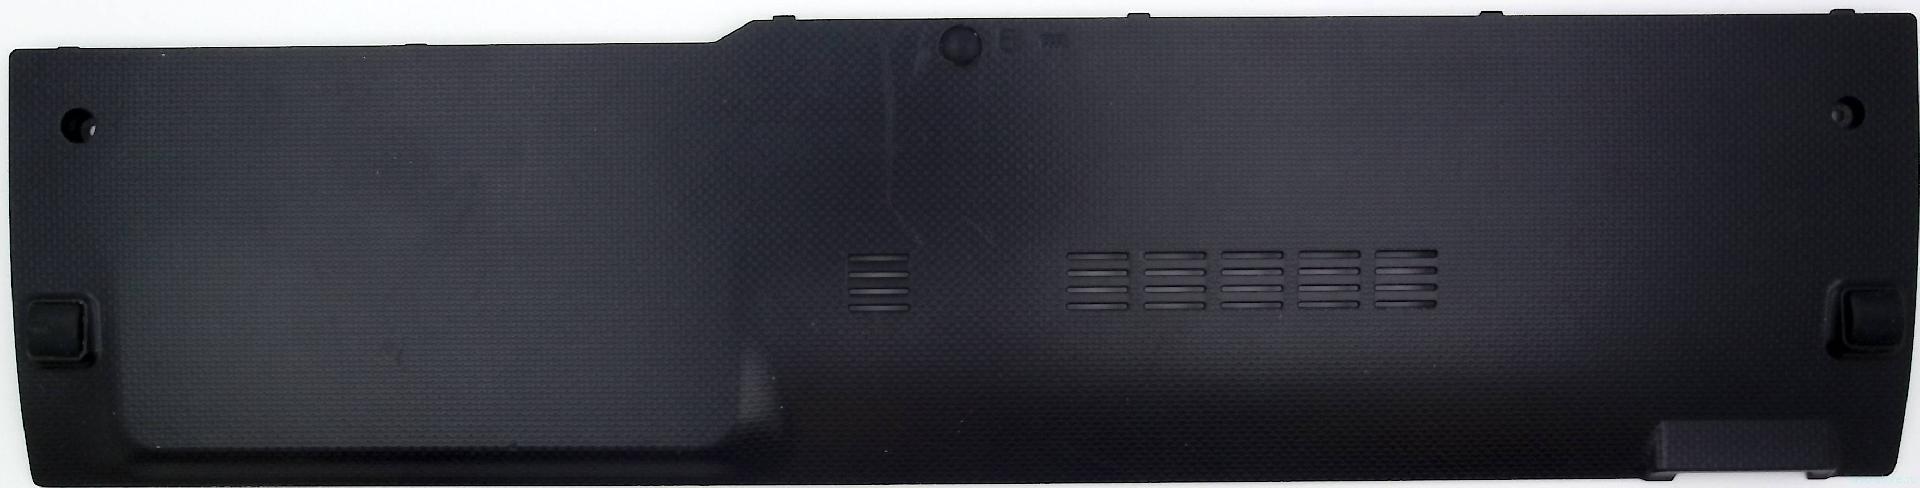 Крышка отсека памяти и жесткого диска для  ноутбука Asus A54, K53